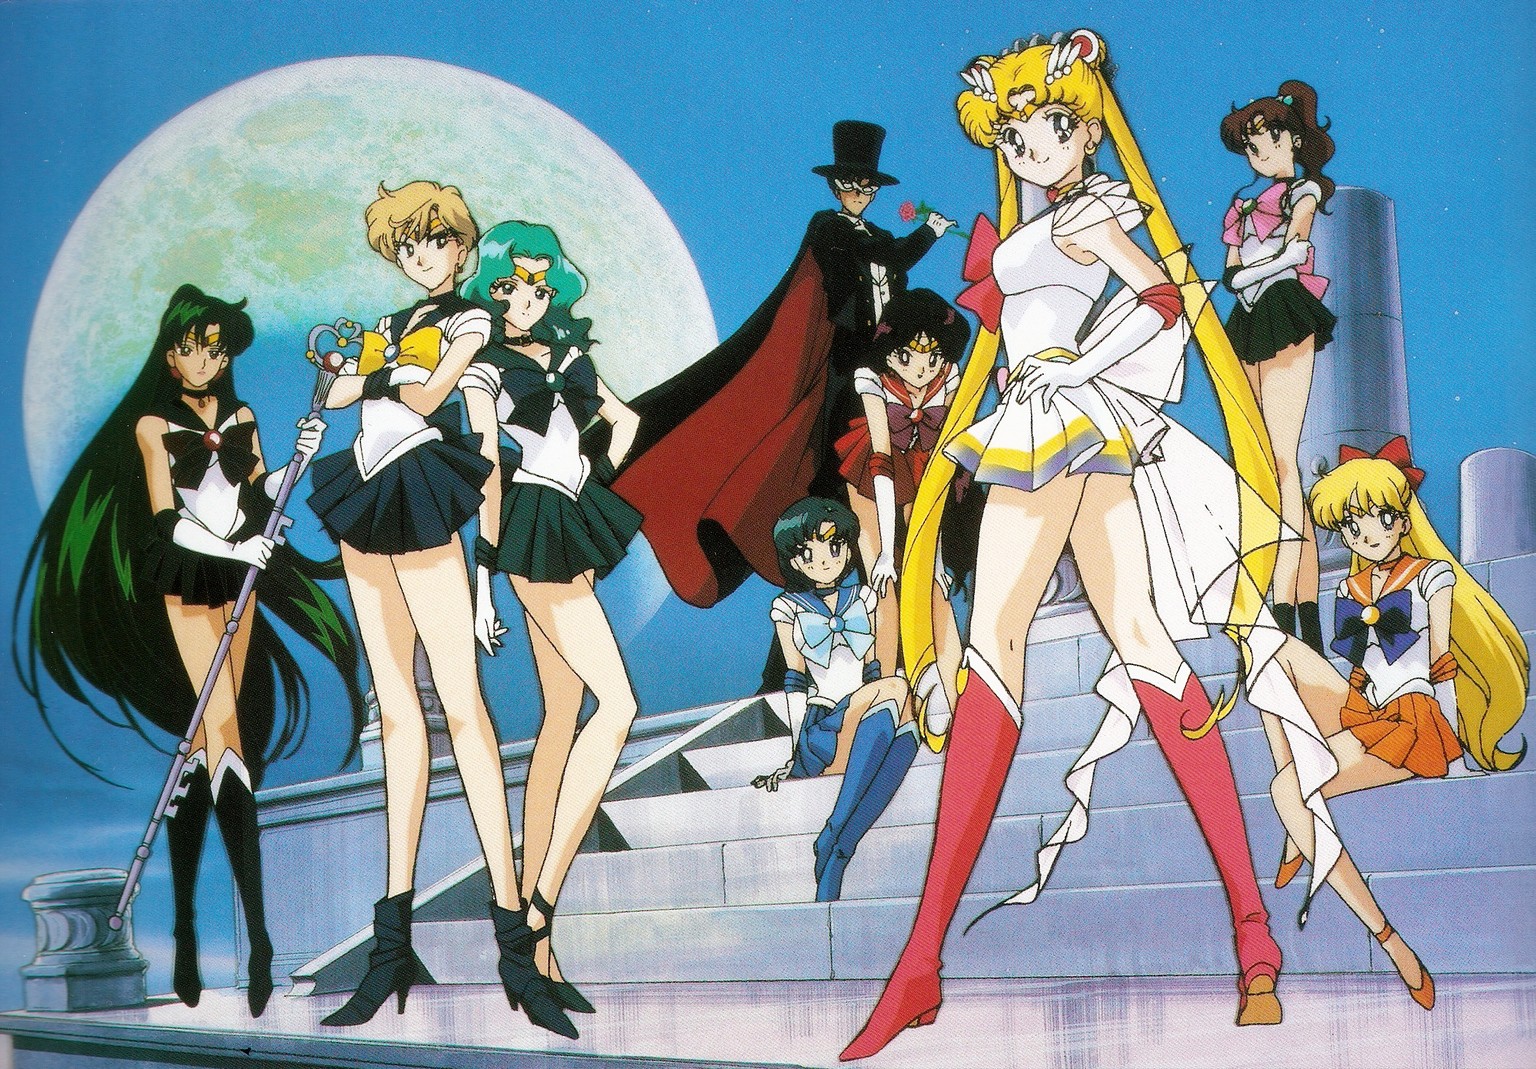 Sailor moon, mondkriegerinnen 
zero chan
http://s2.zerochan.net/Bishoujo.Senshi.Sailor.Moon.full.447374.jpg